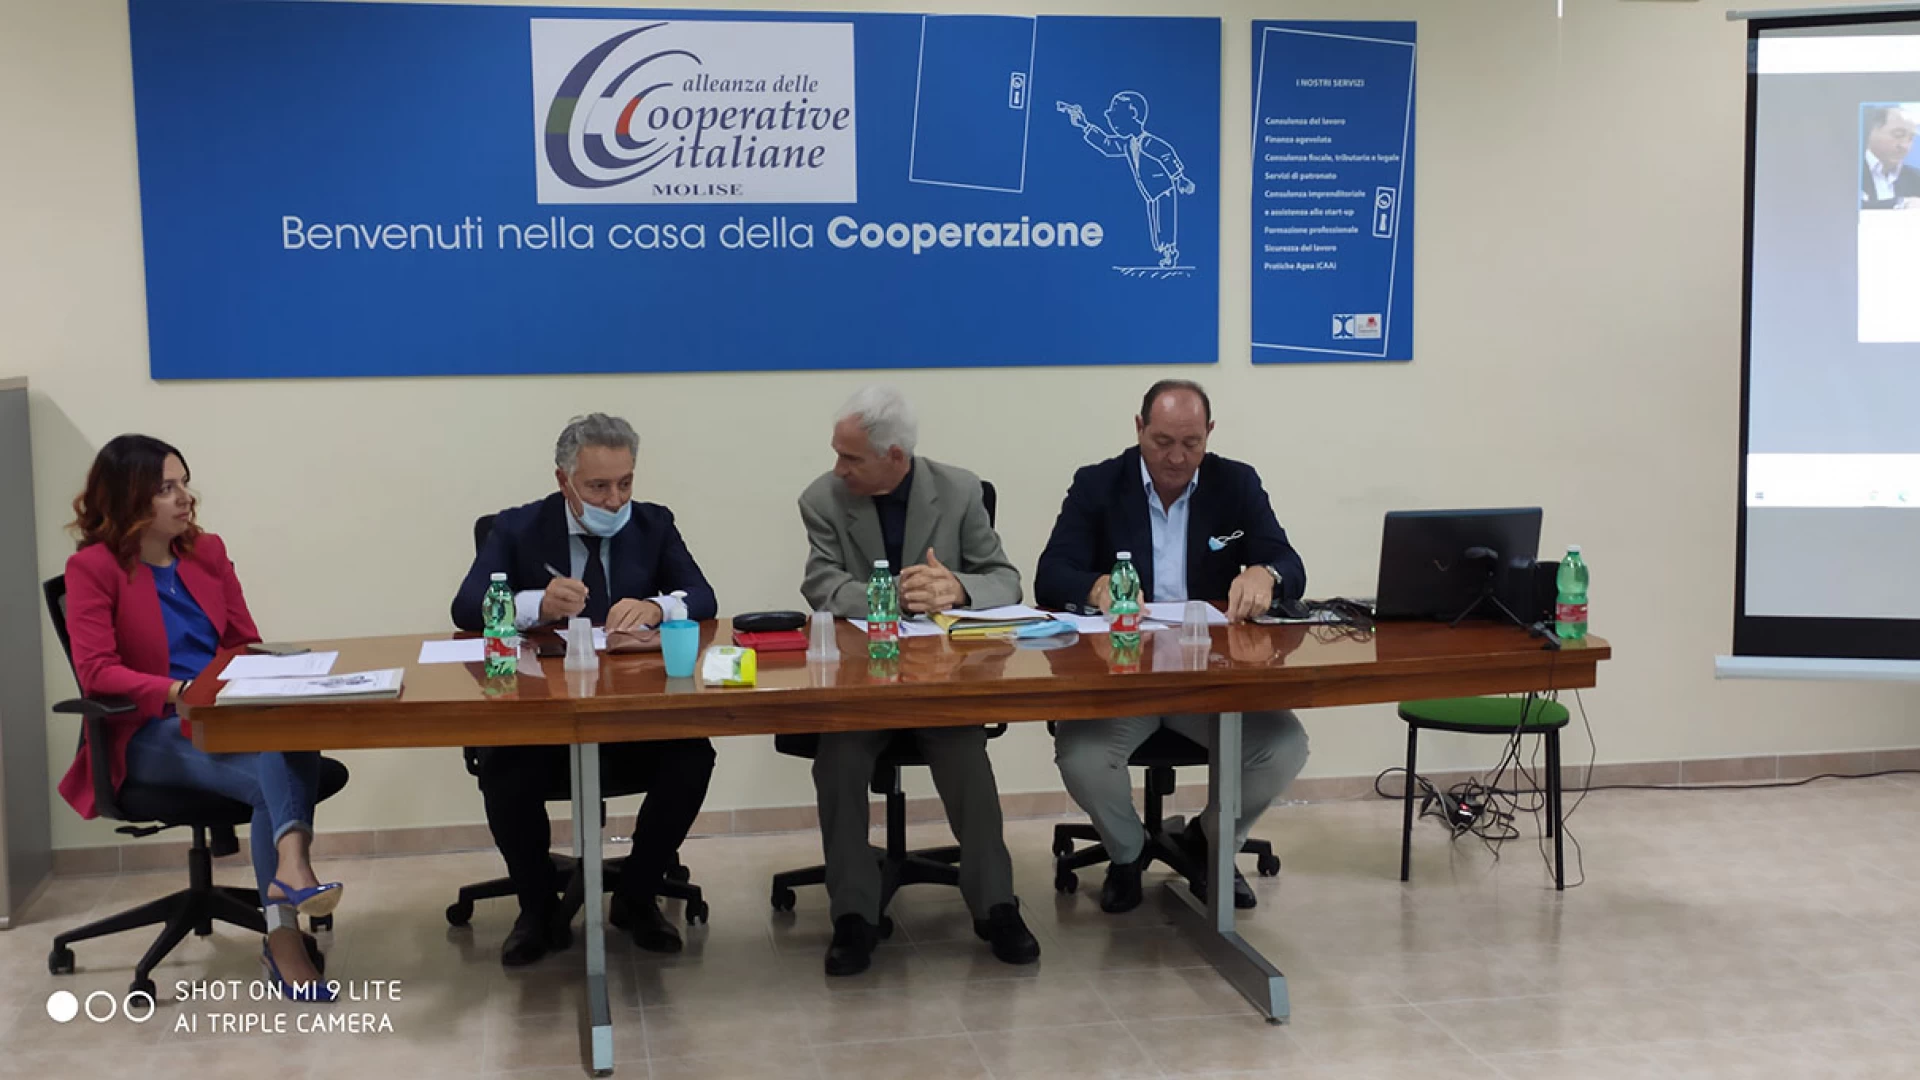 Strutture residenziali e prevenzione contagi, l'Alleanza delle Cooperative italiane del Molise scrive a Toma